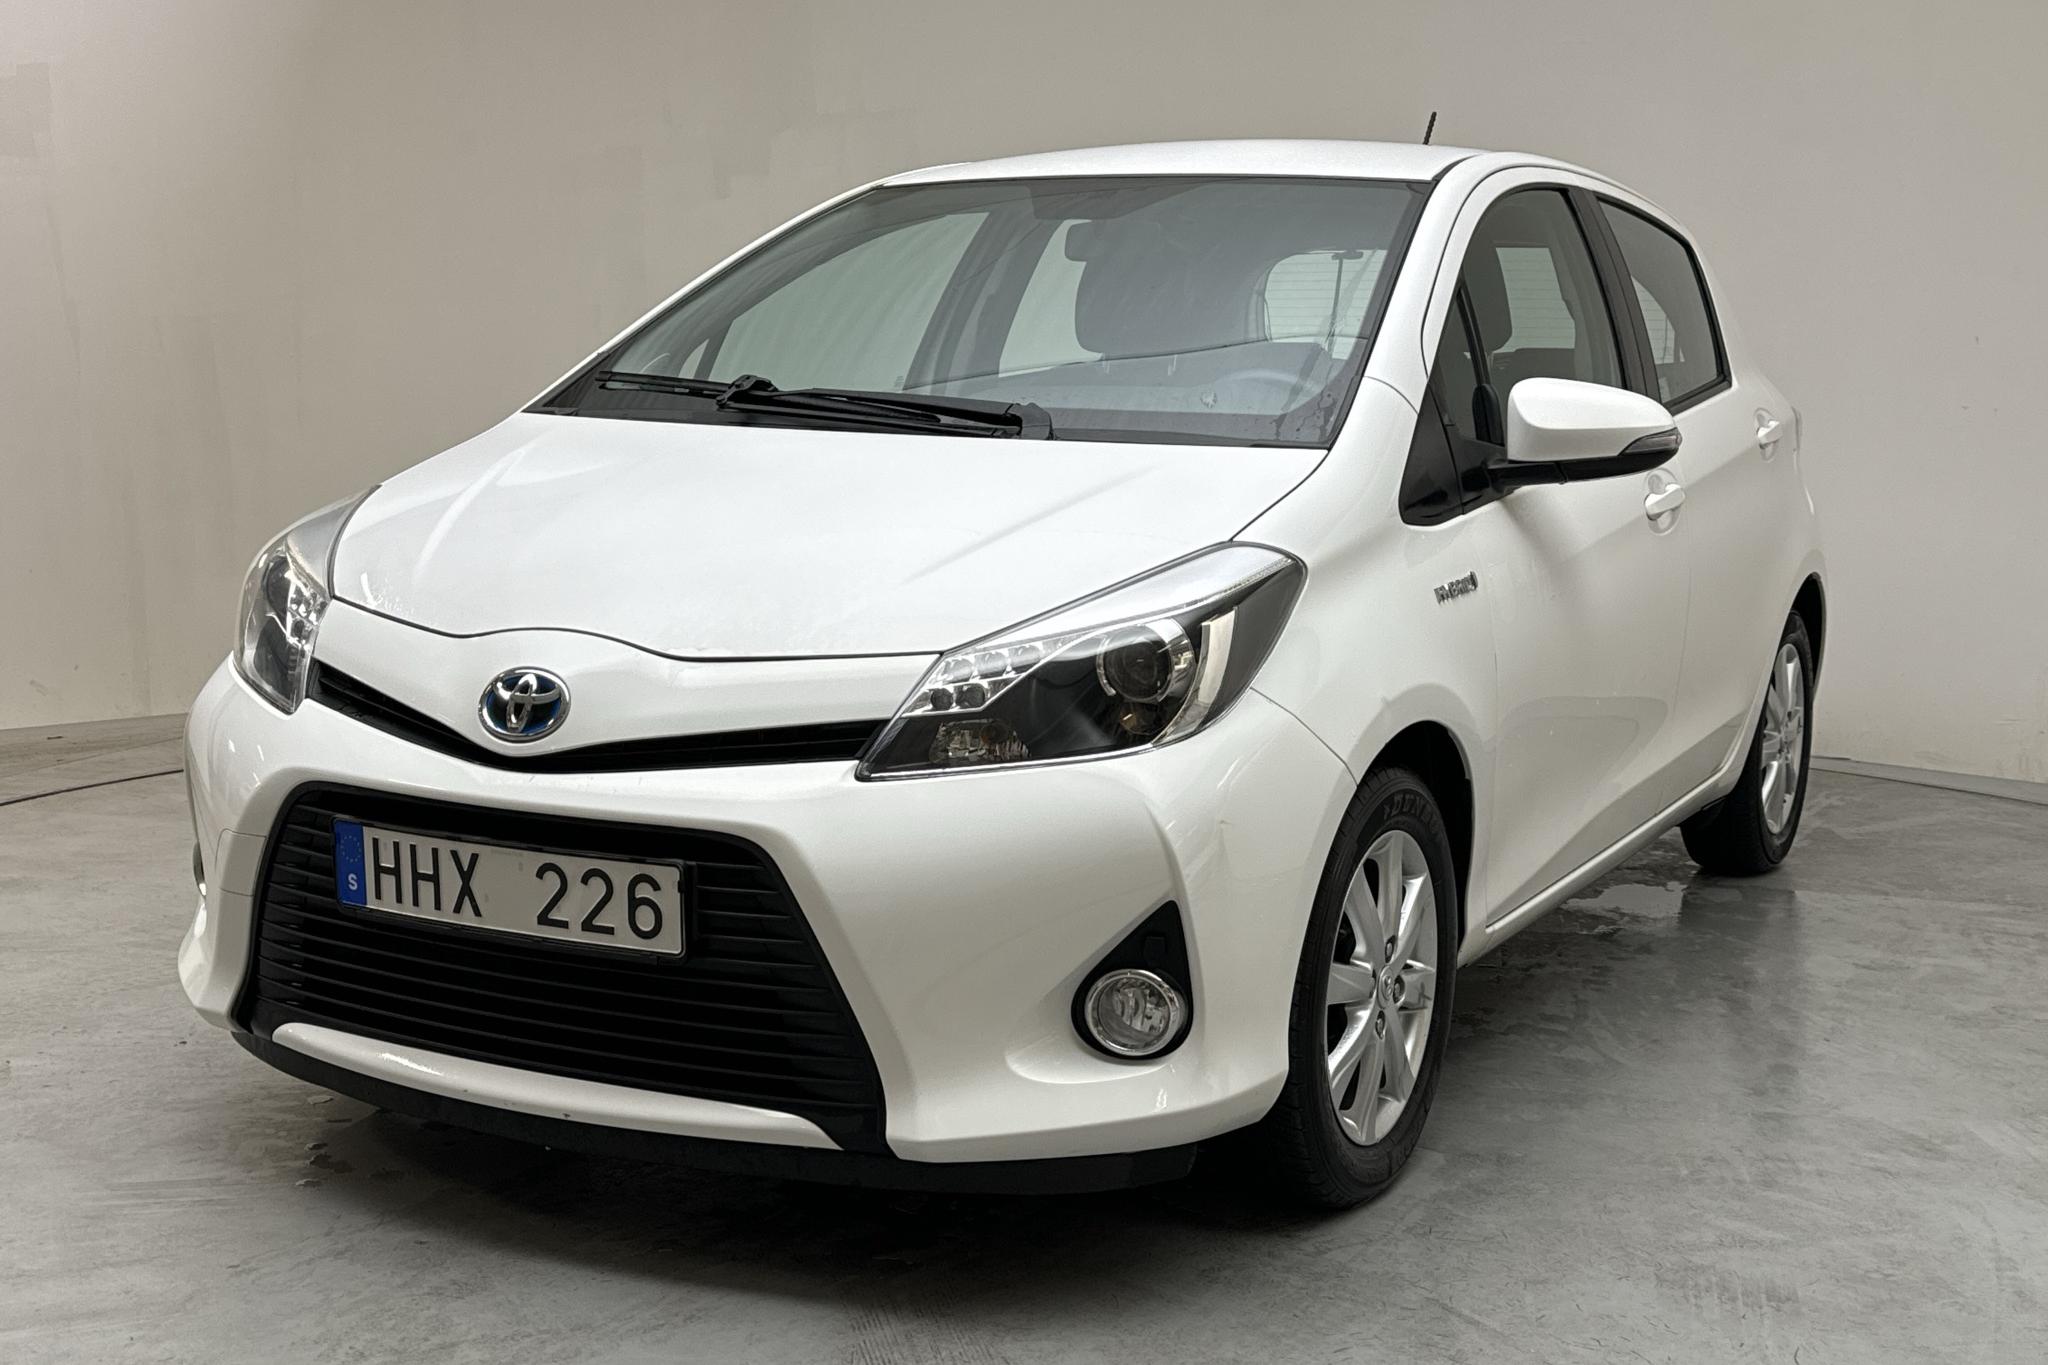 Toyota Yaris 1.5 HSD 5dr (75hk) - 56 740 km - Automaattinen - valkoinen - 2014